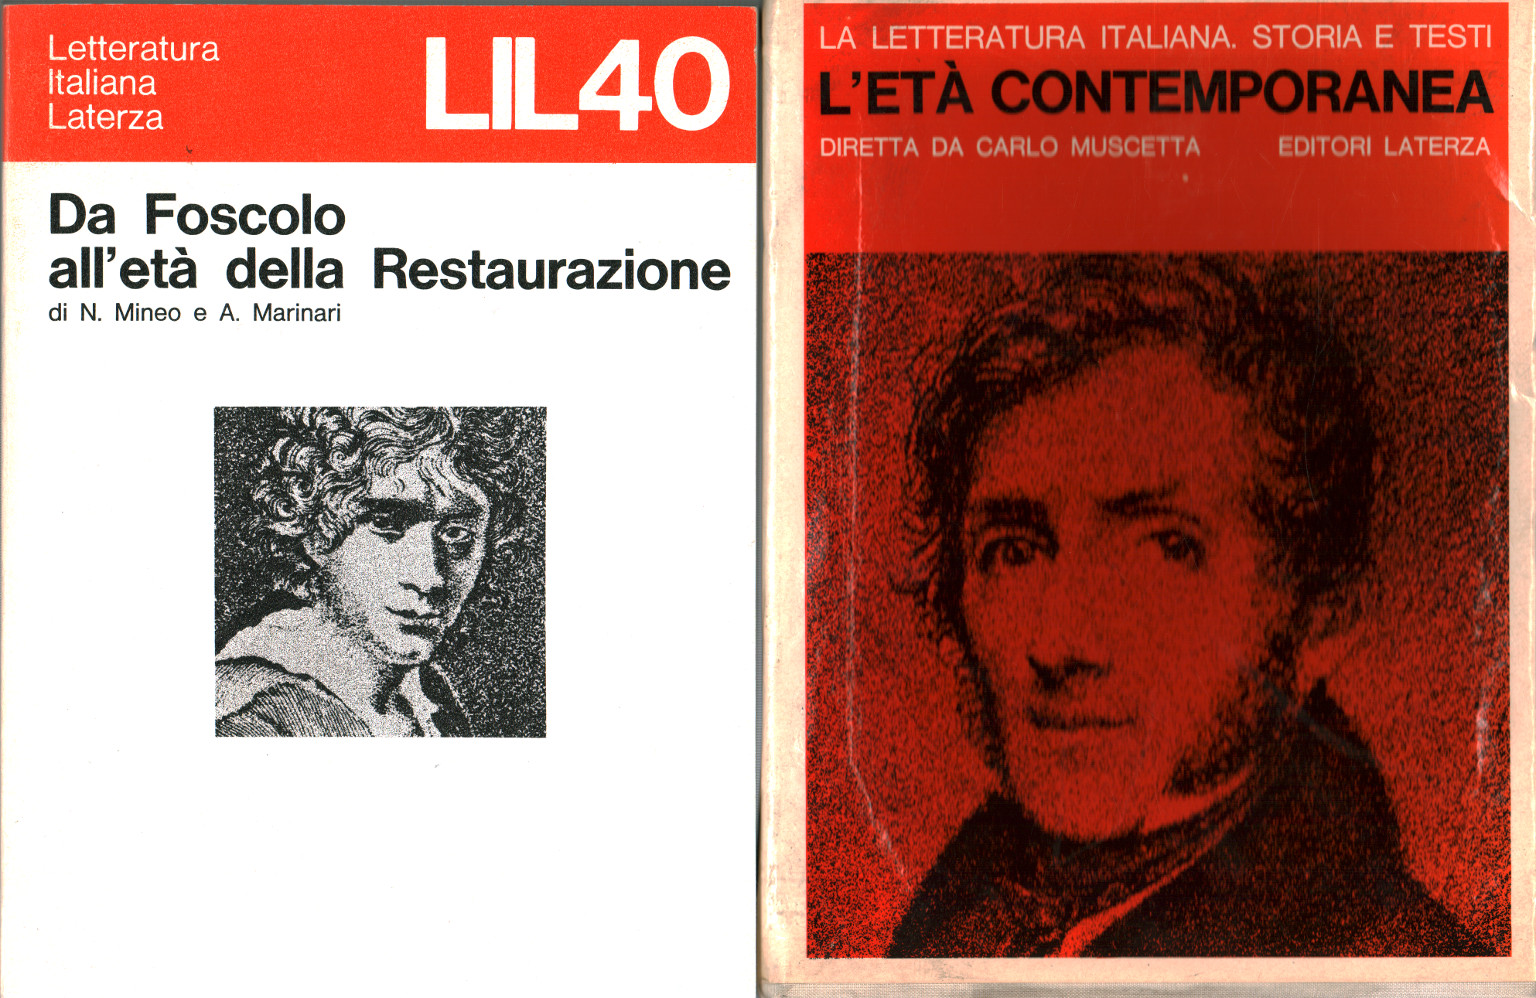 Italienische Literatur. Geschichte und Texte: L'età c, s.a.